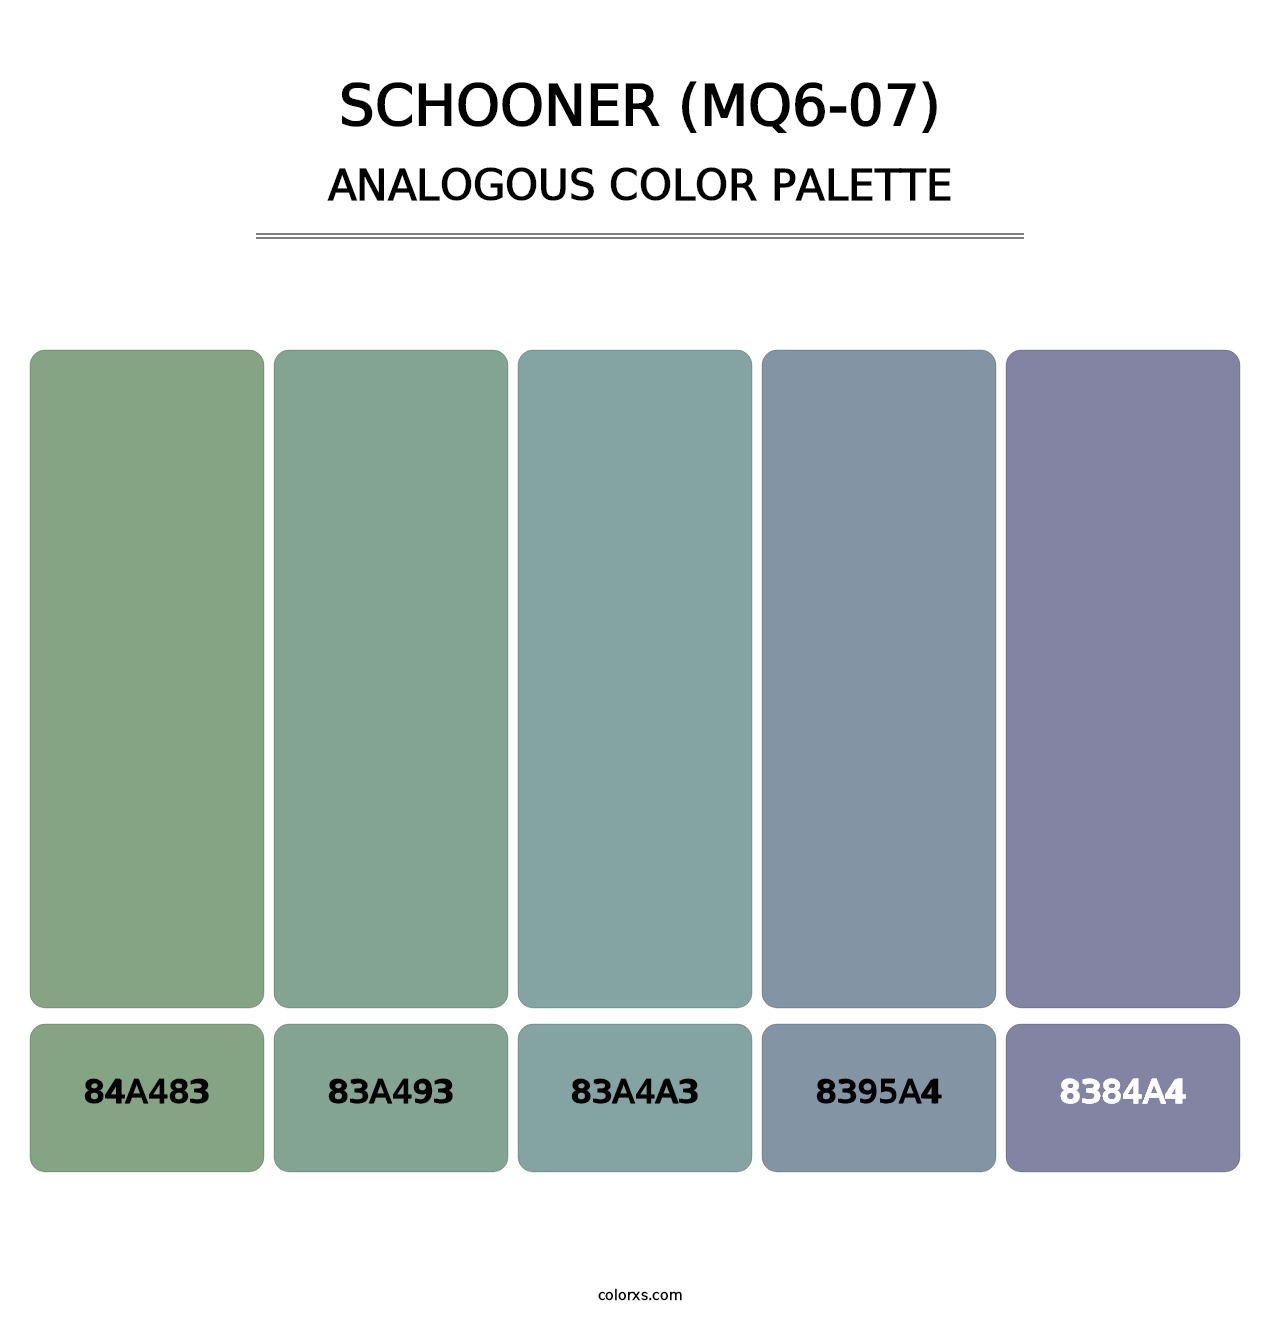 Schooner (MQ6-07) - Analogous Color Palette